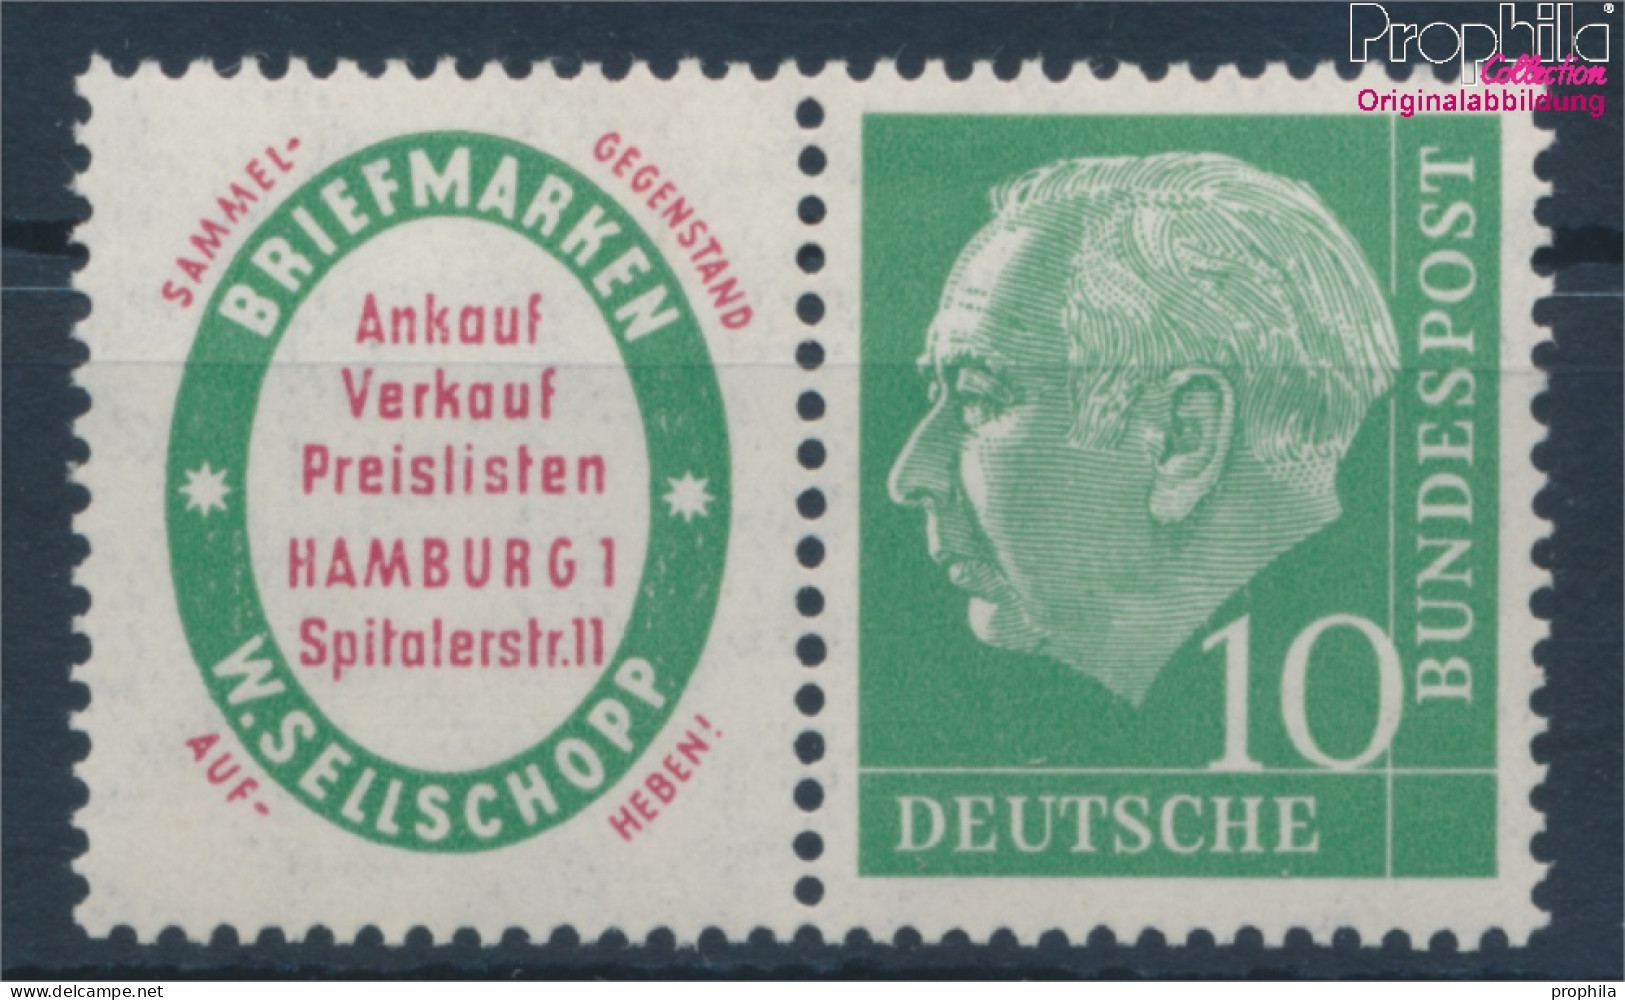 BRD W4 Postfrisch 1955 Heuss (10343512 - Ungebraucht